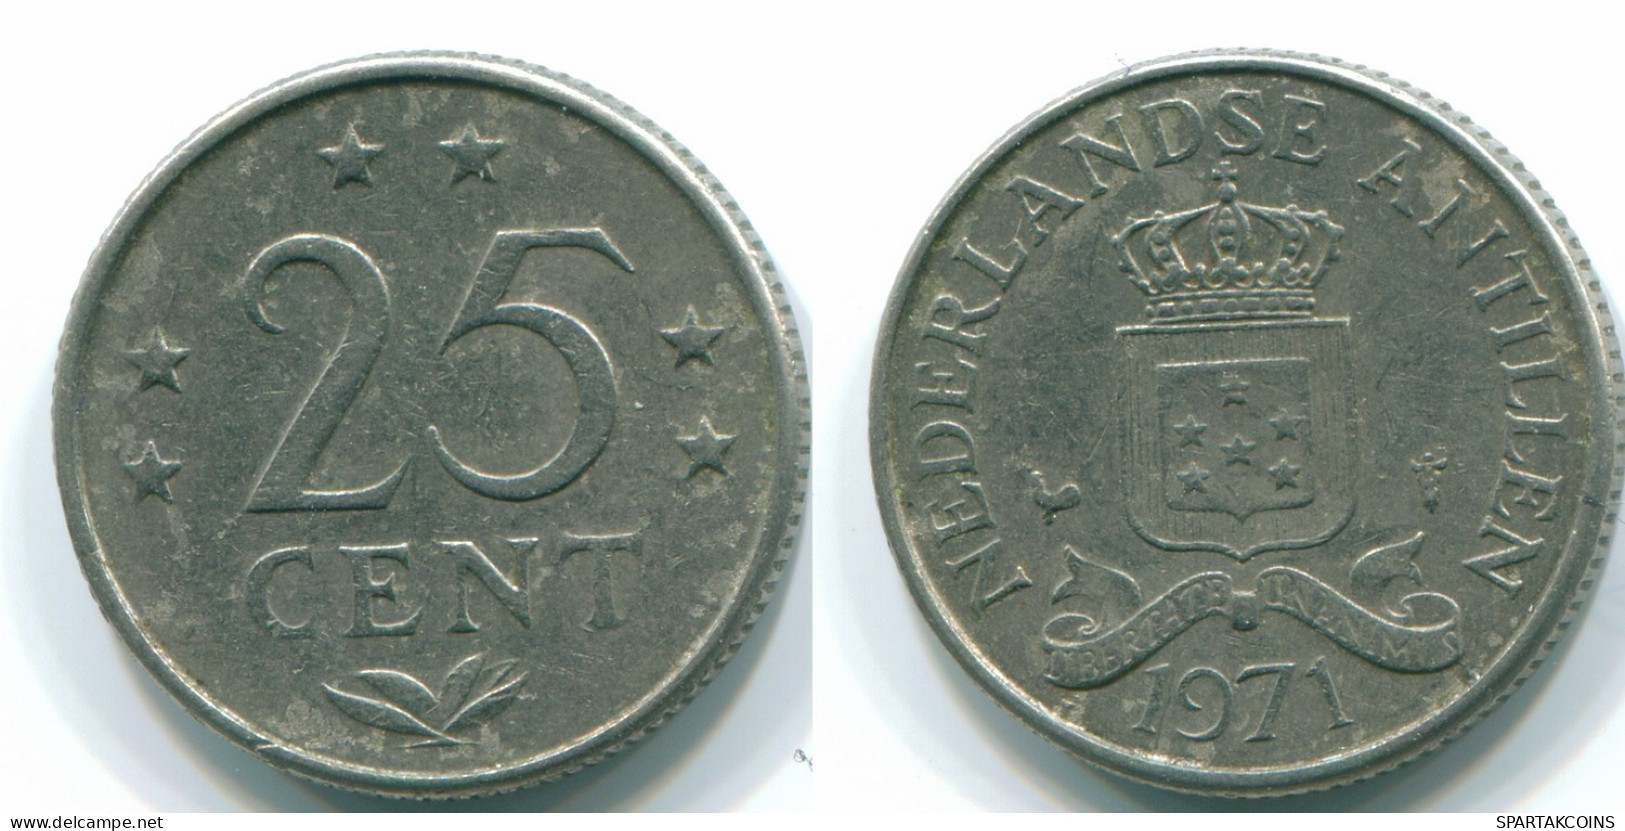 25 CENTS 1971 NETHERLANDS ANTILLES Nickel Colonial Coin #S11584.U.A - Niederländische Antillen